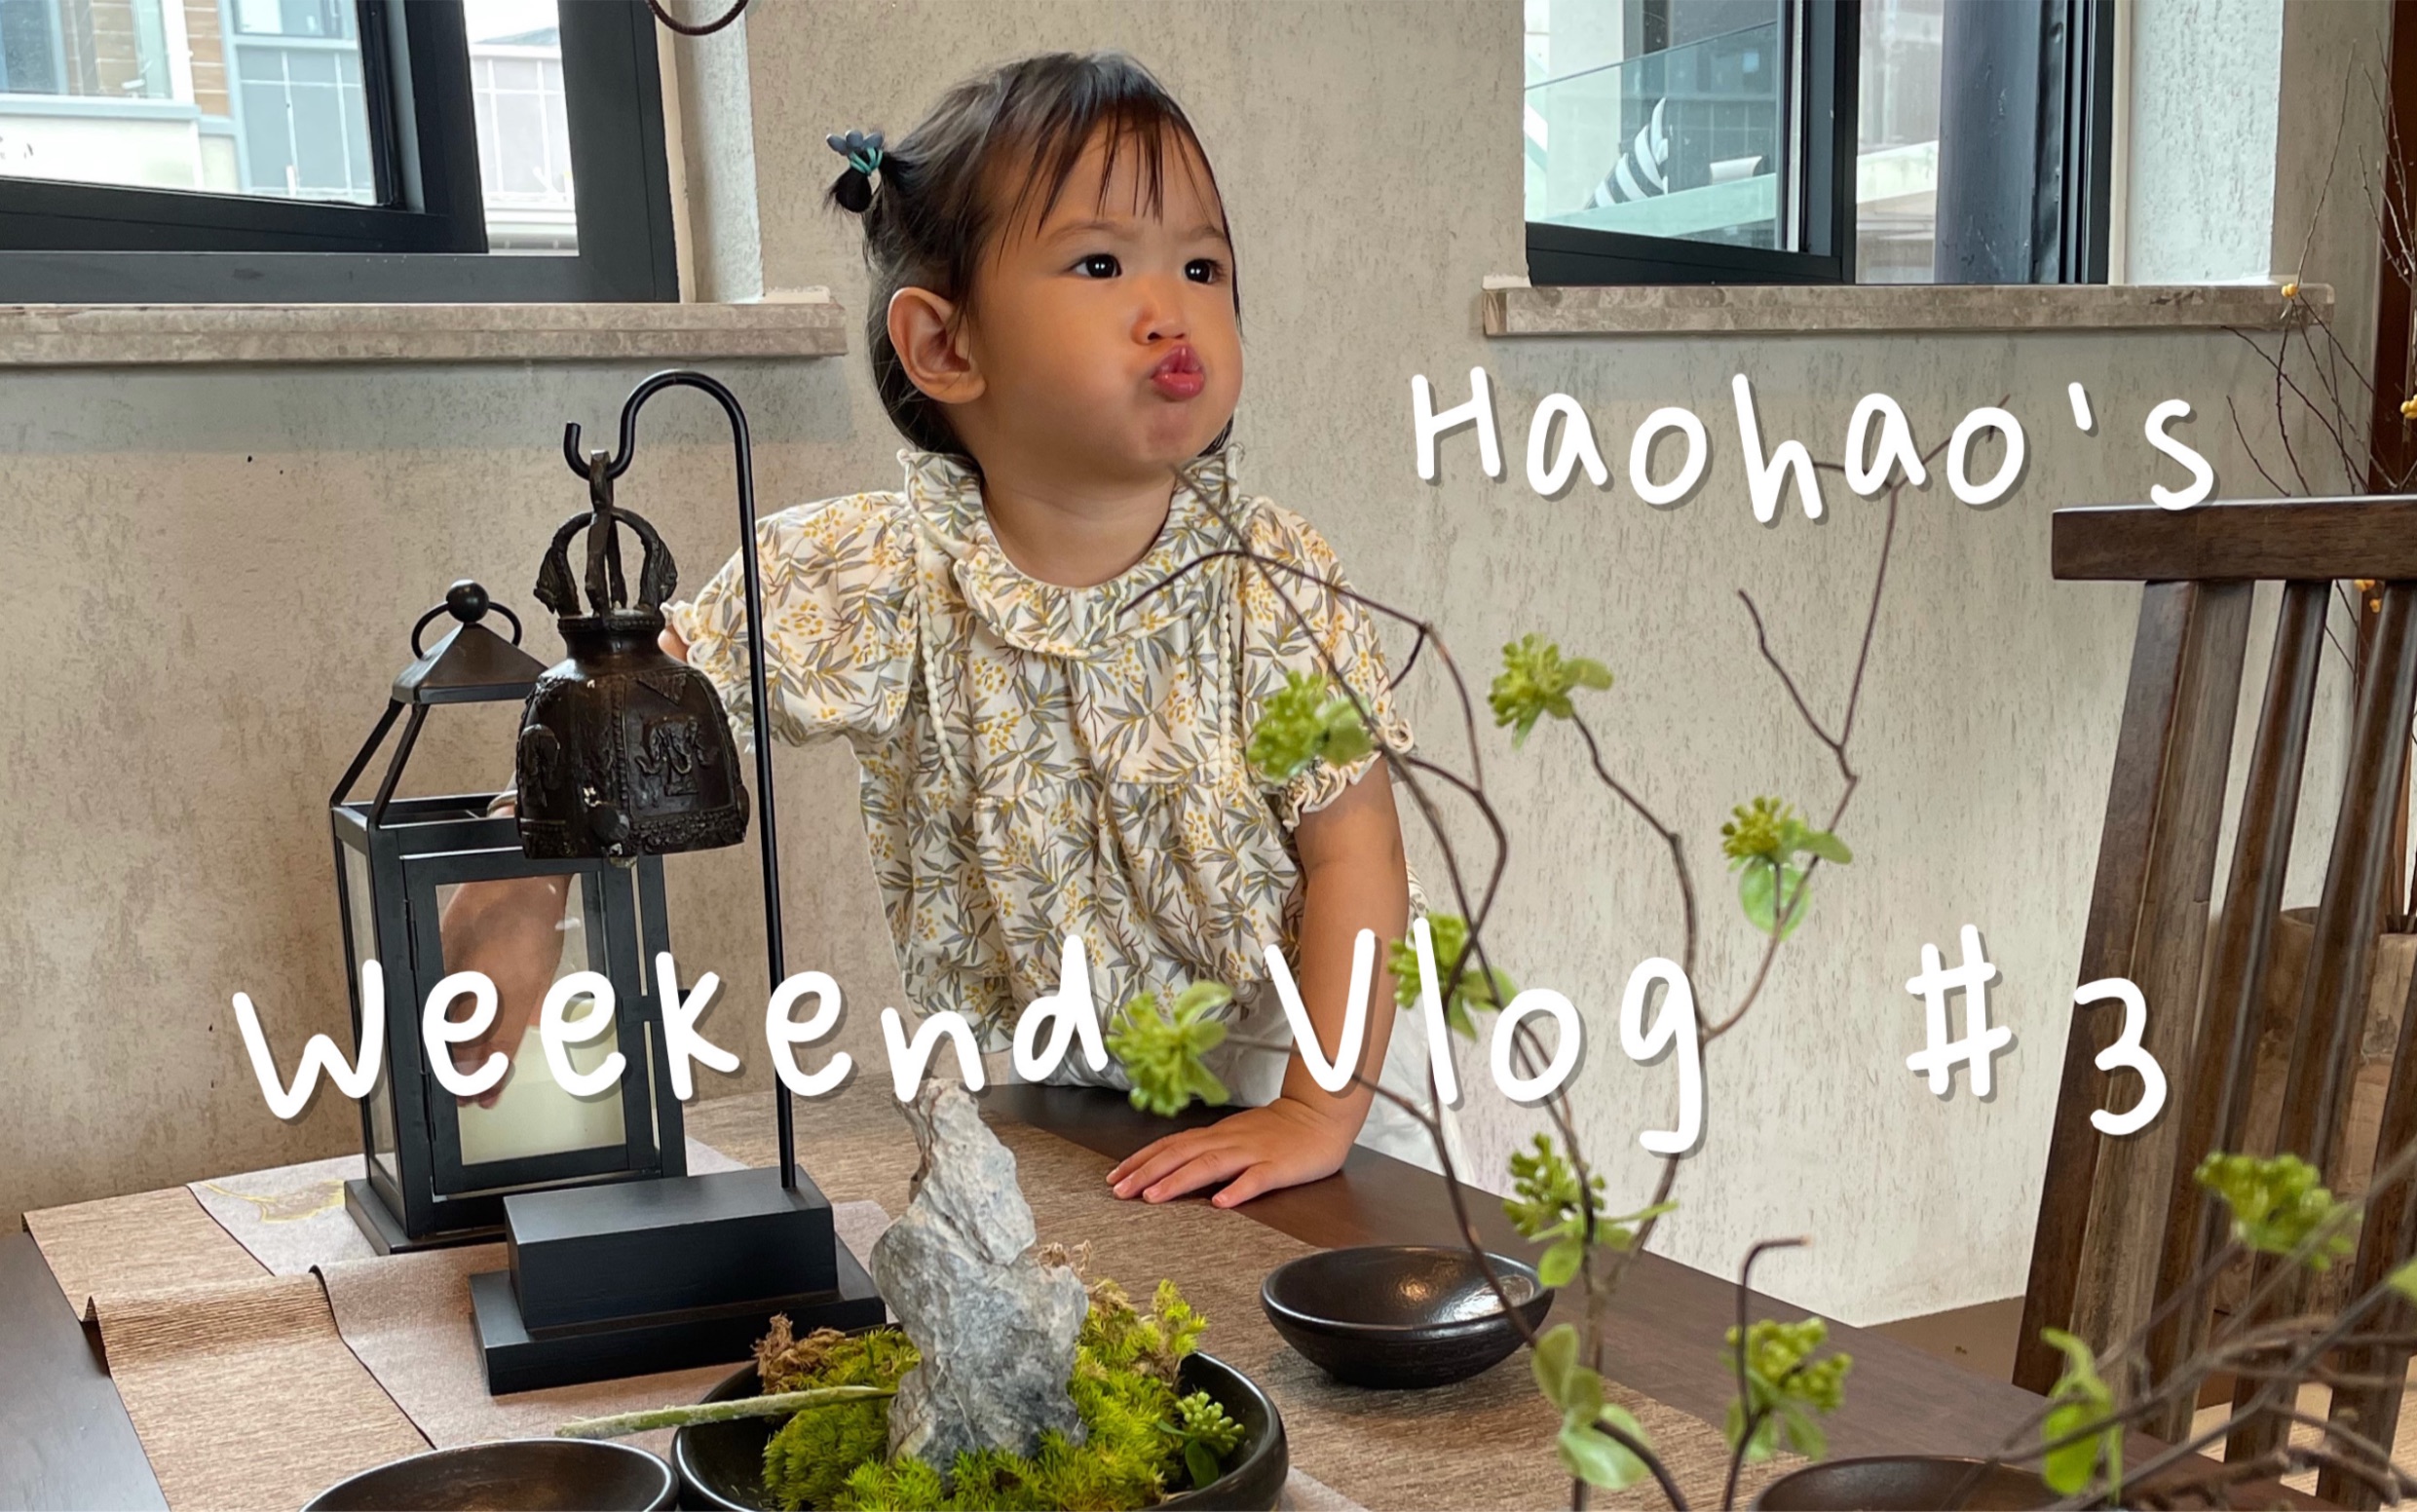 Weekend Vlog #3 | 绿地无舍 |青城山 | 给乌龟喂菜 | 小恐龙水枪 | 新玩具扭扭车